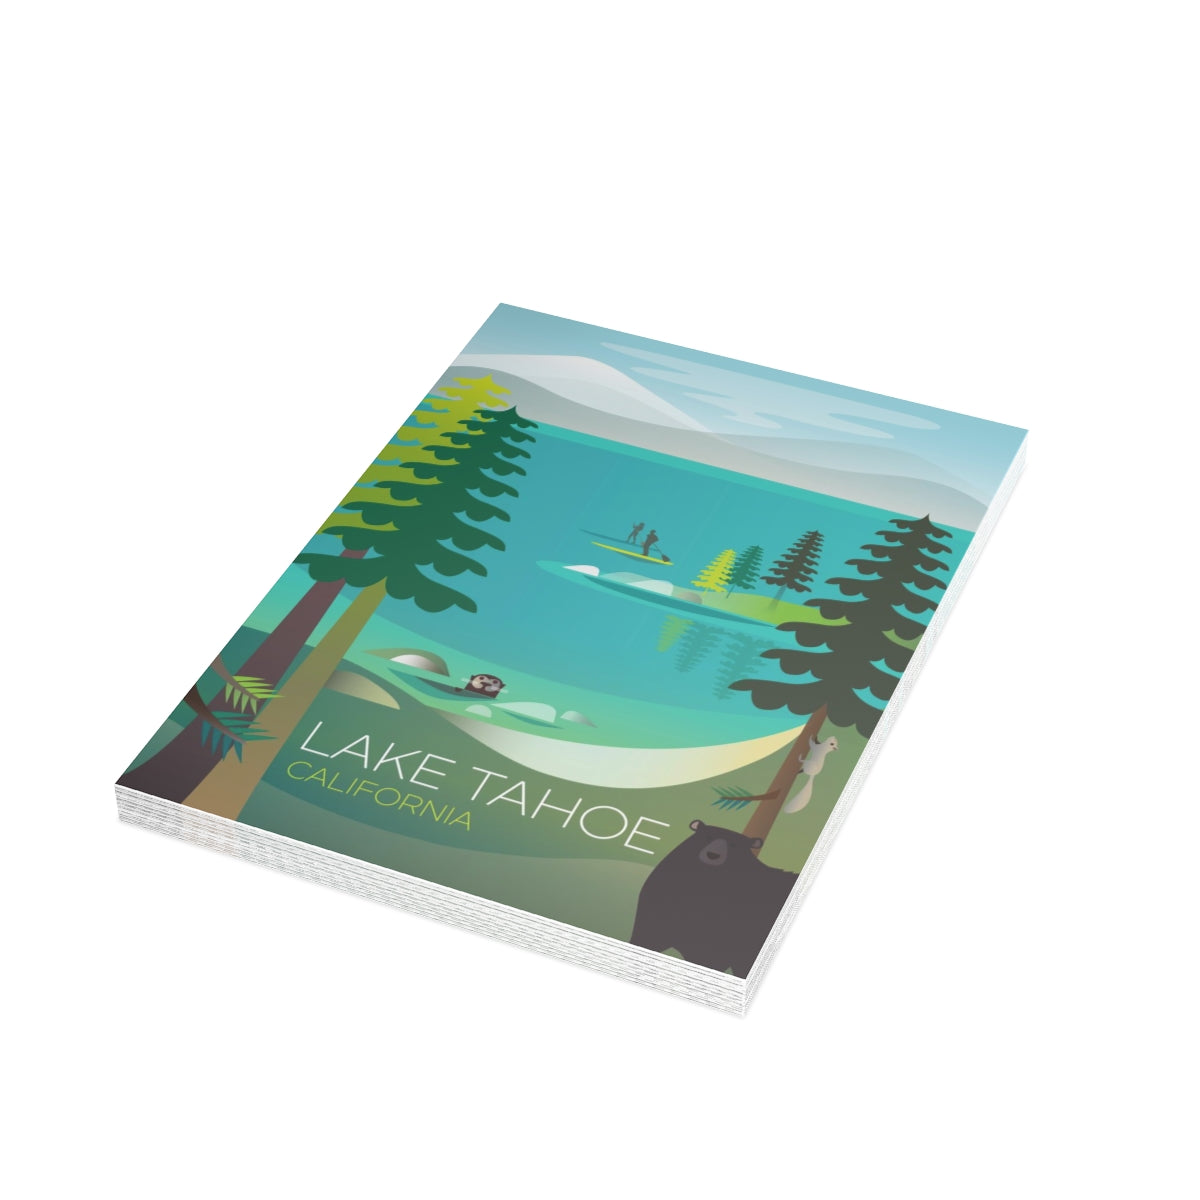 Cartes de notes mates pliées Lake Tahoe + enveloppes (10 pièces)